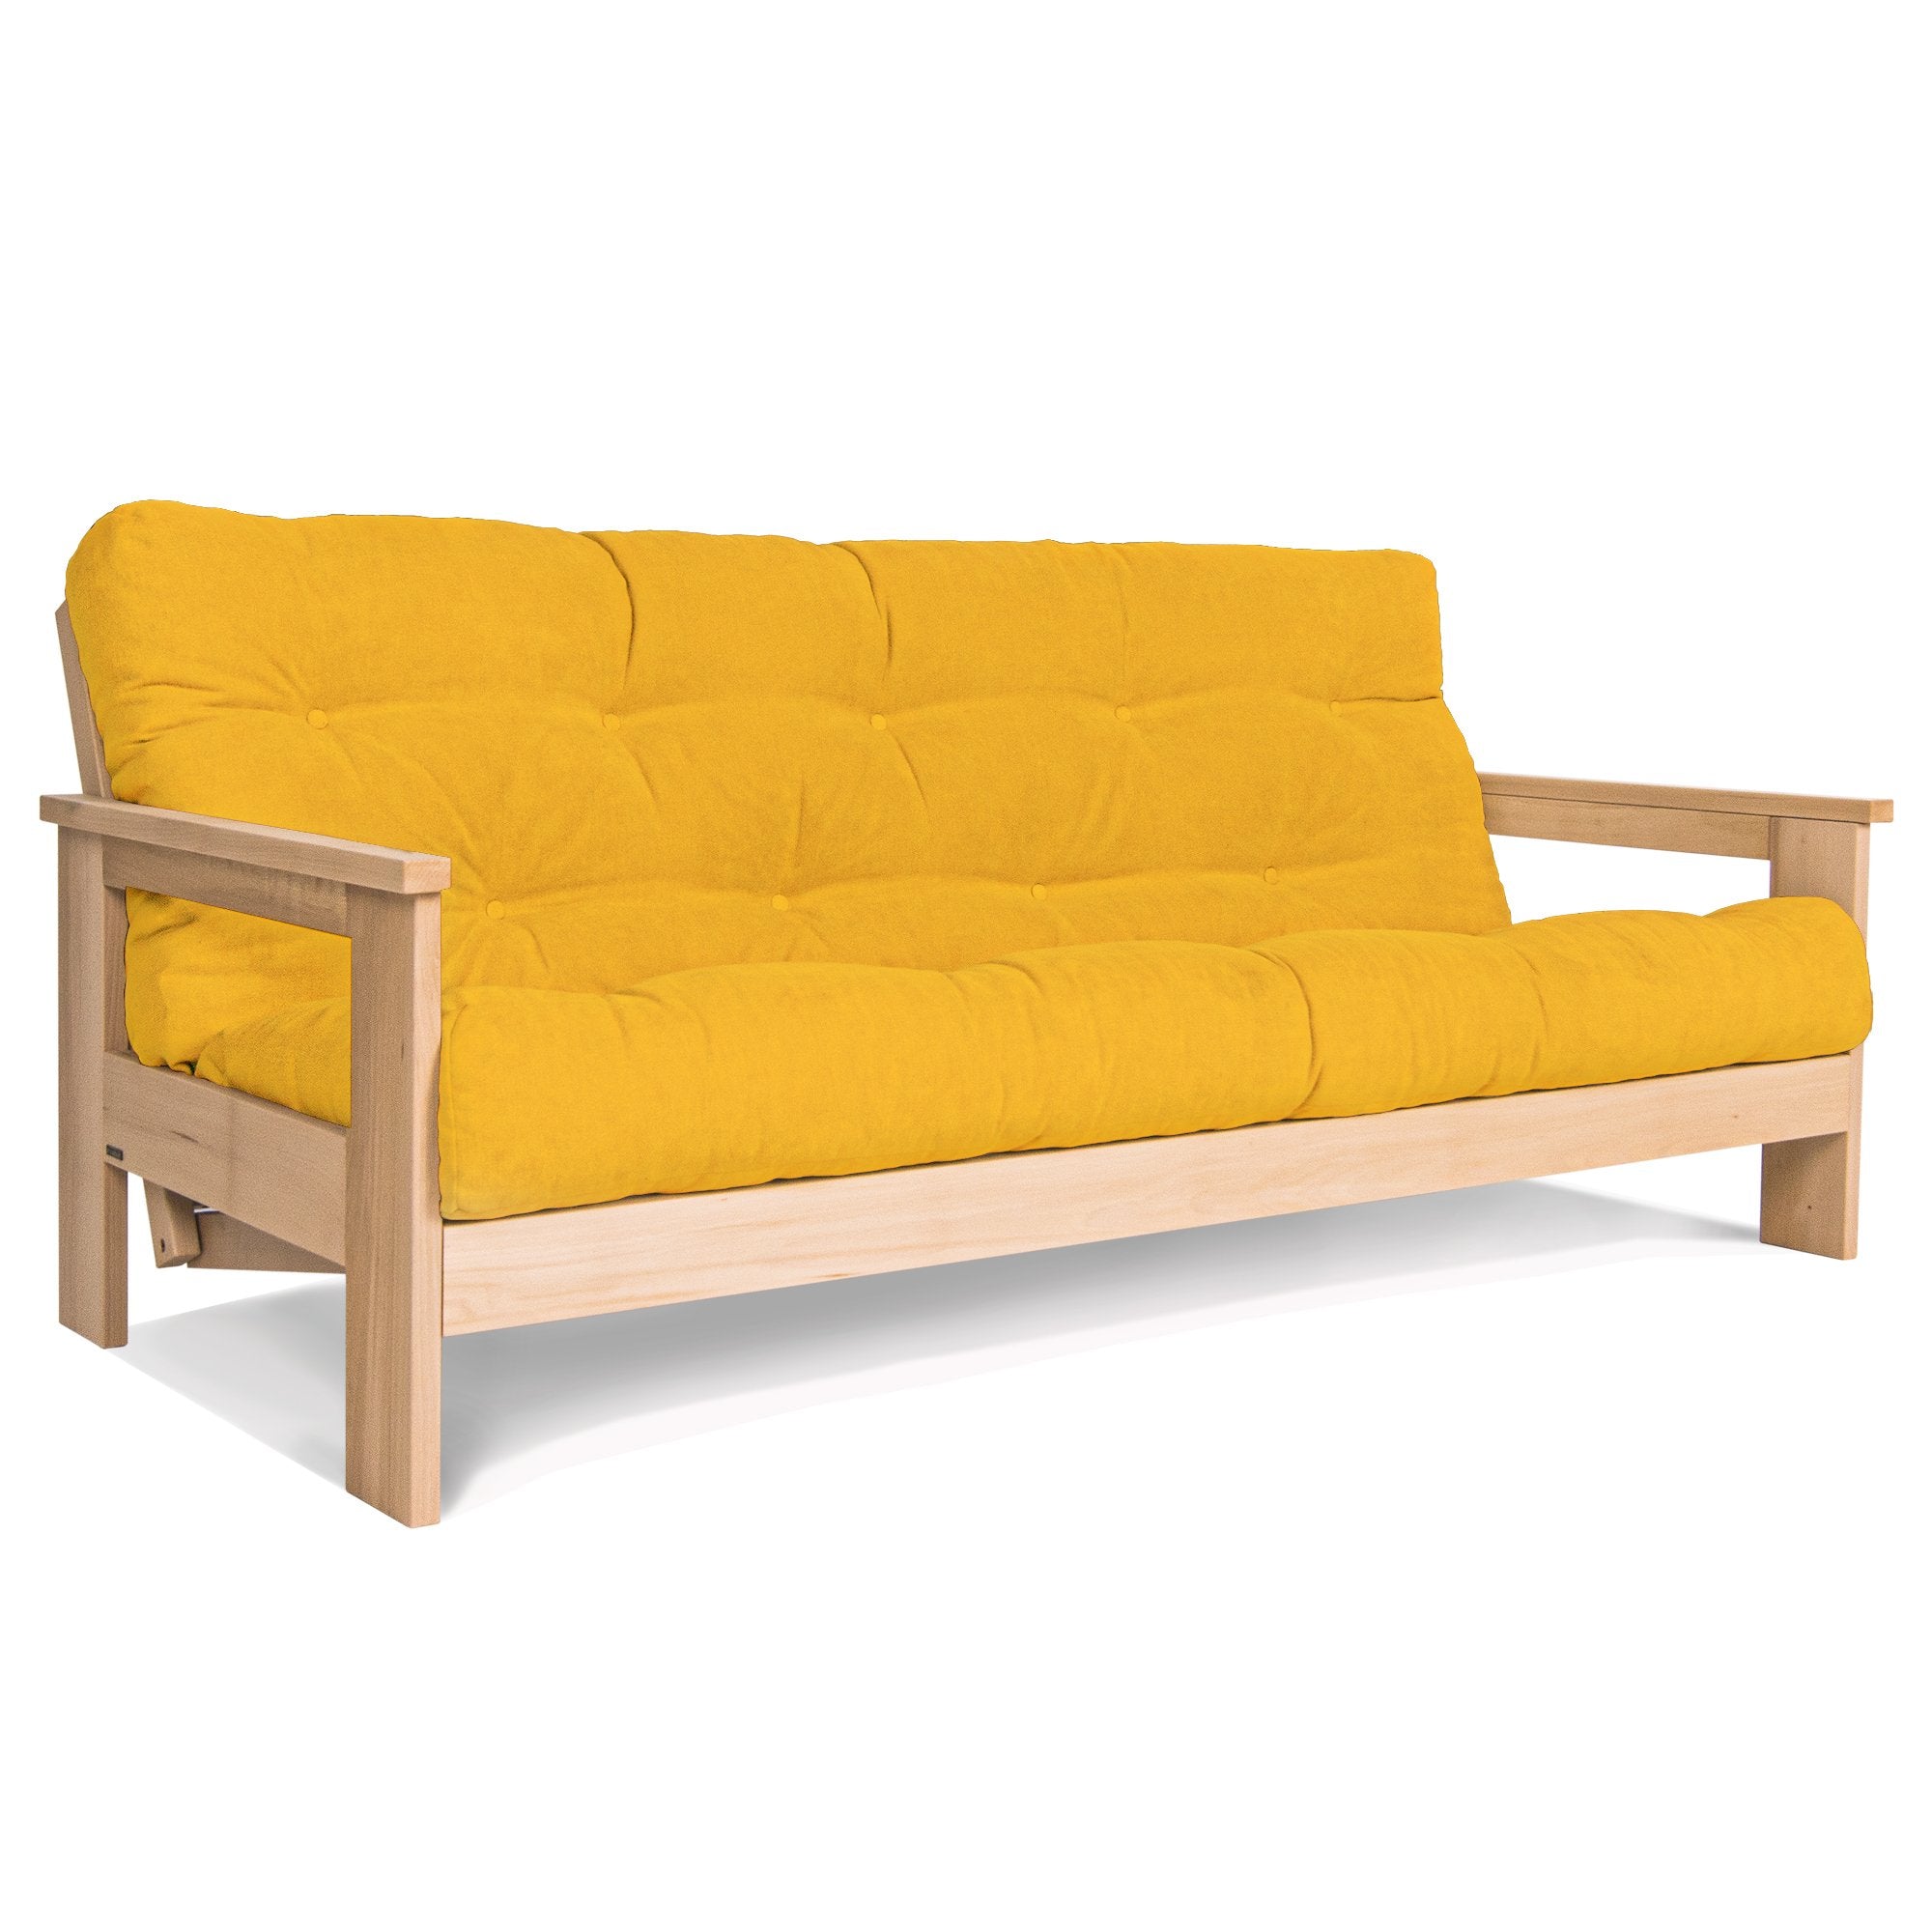 Раскладной диван-футон MEXICO, бук натурального цвета